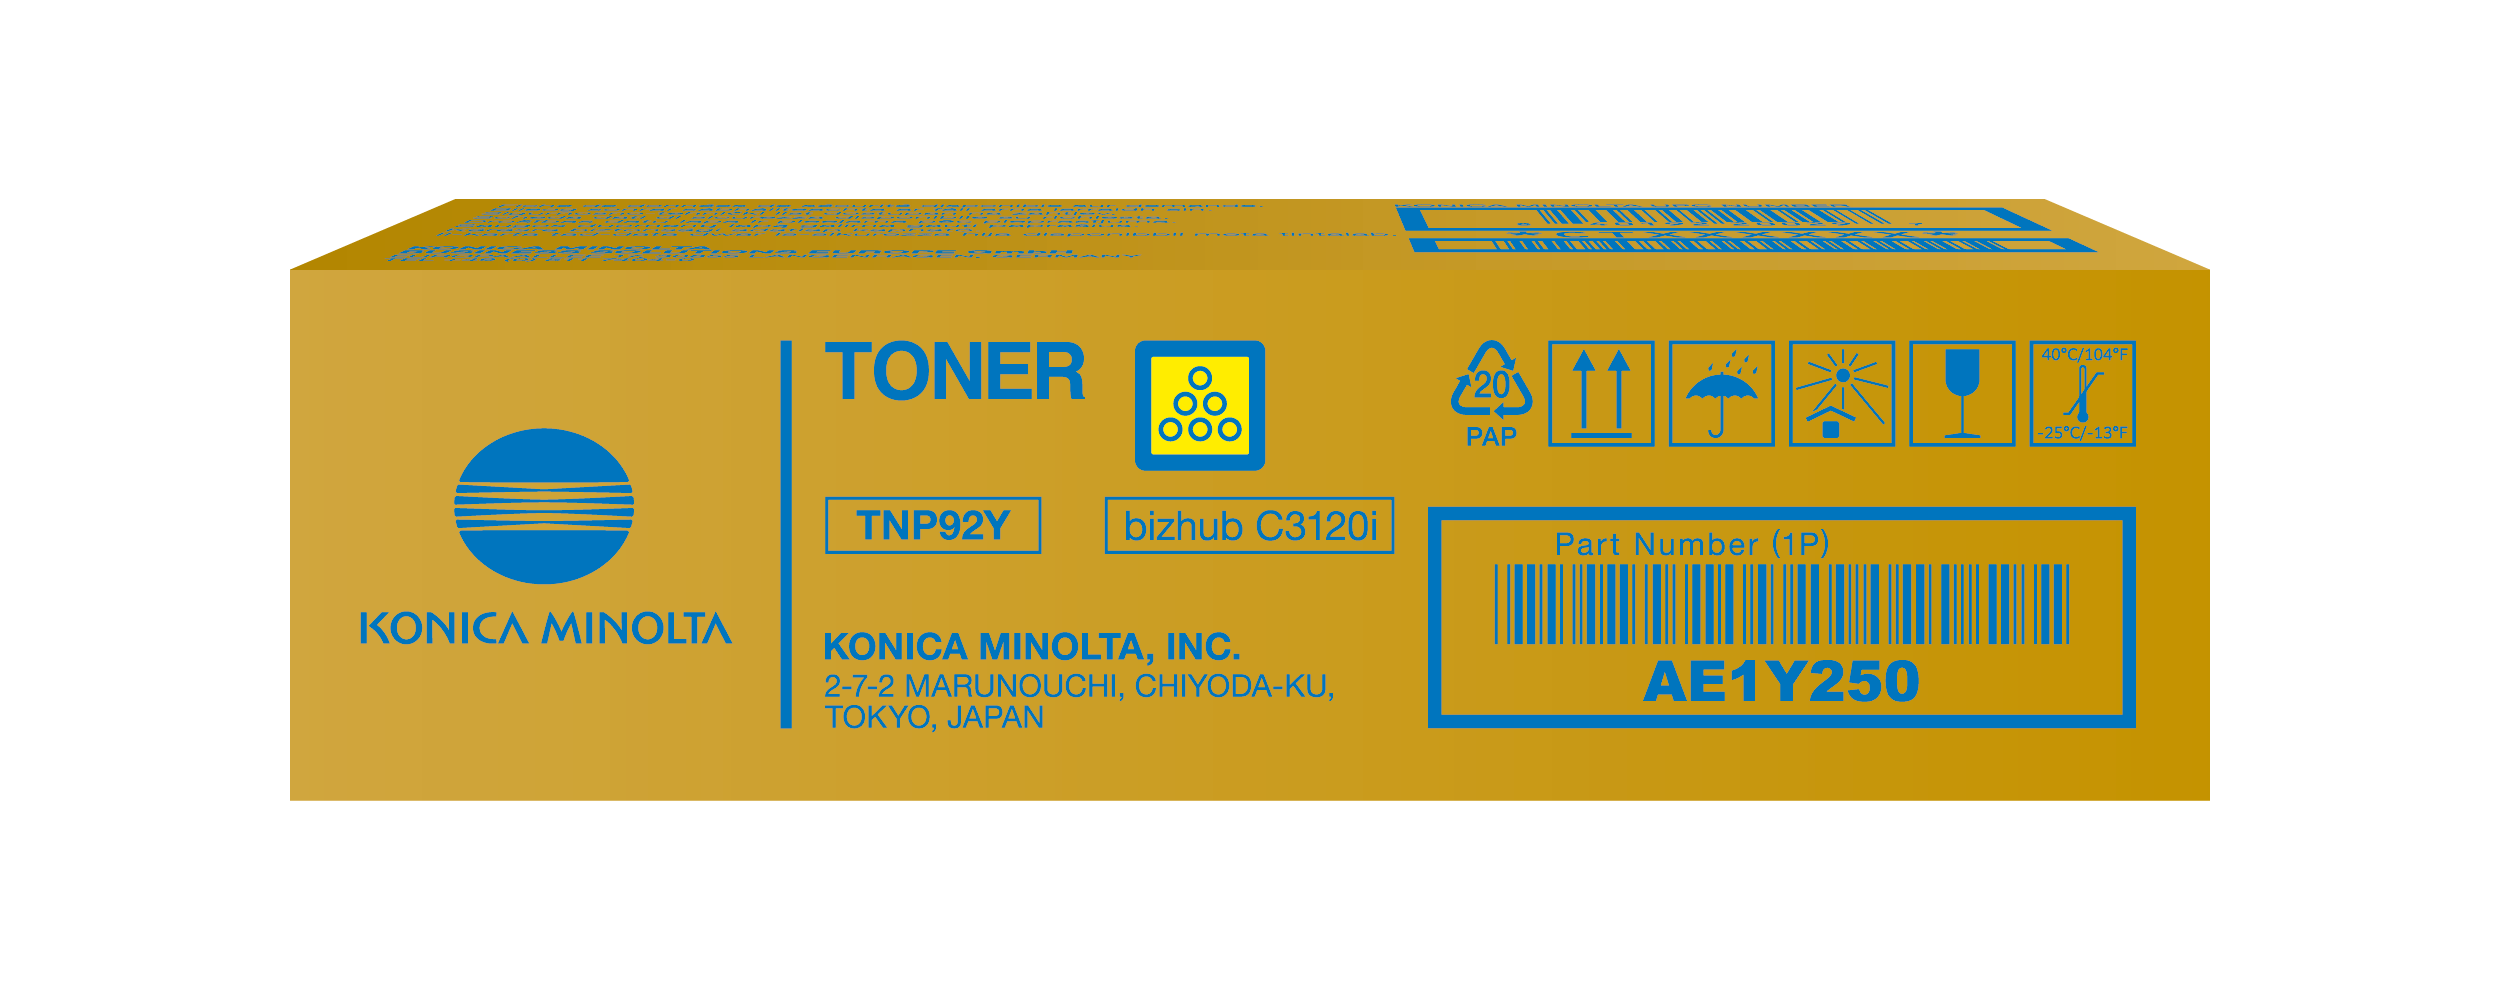 Toner Yellow for bizhub C3120i - TNP92Y